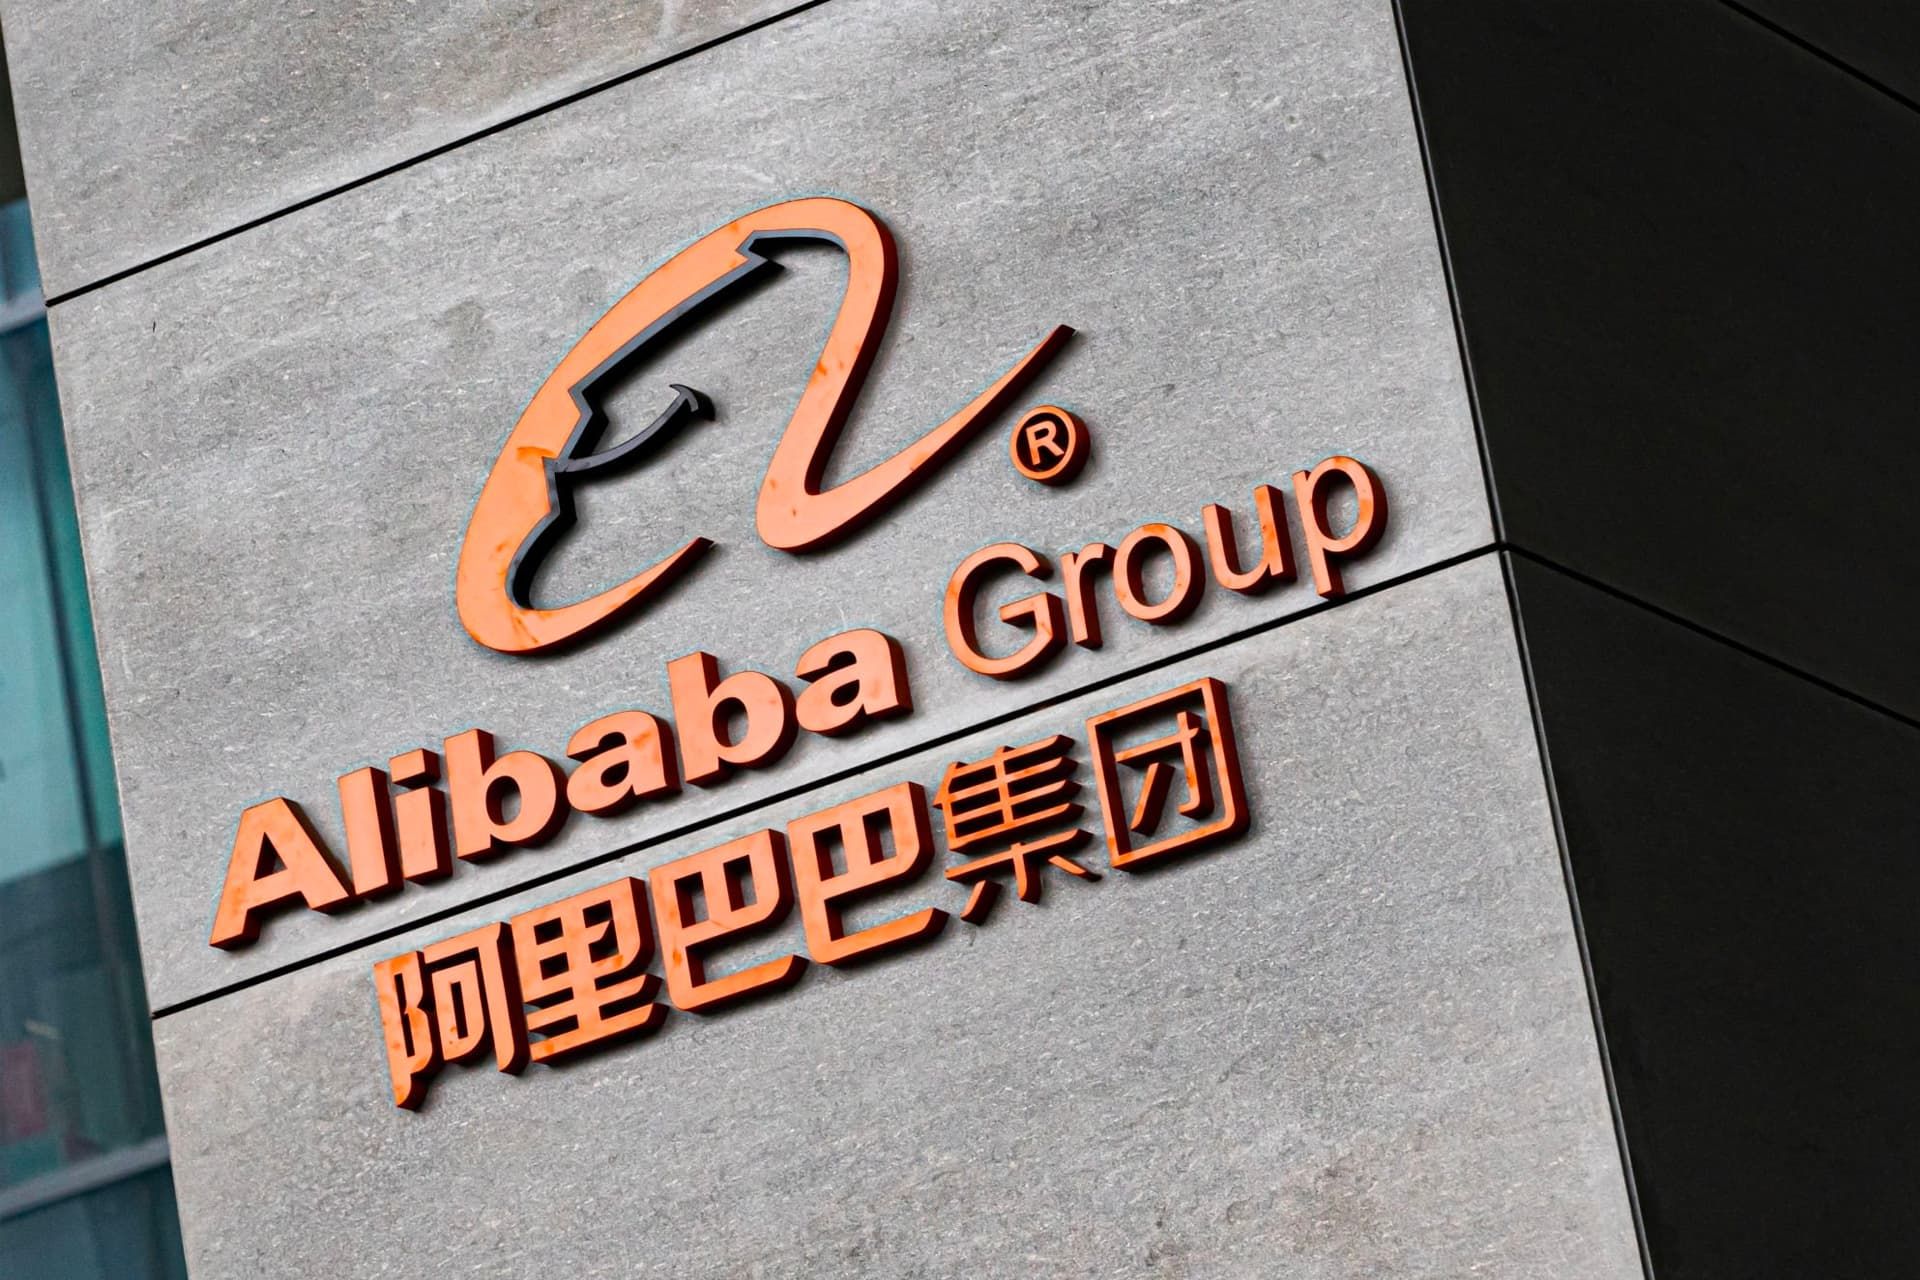 لوگو علی بابا / Alibaba چین روی ساختمان در روز روشن